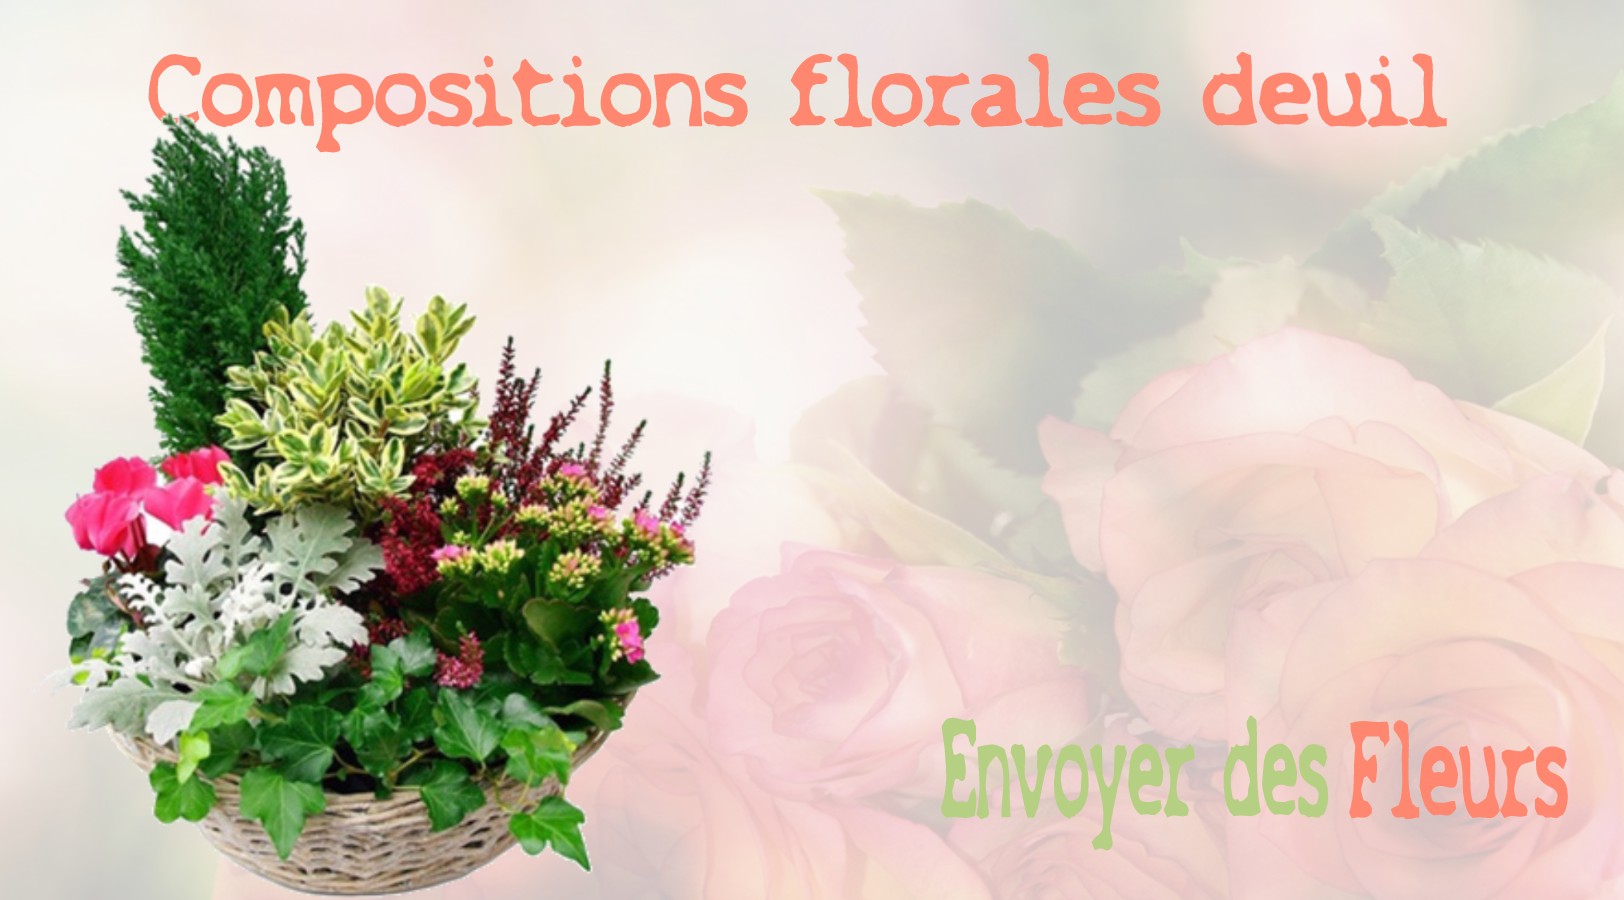 Compositions Florales deuil - LIVRAISON FLEURS DEUIL A ADAINVILLE 78